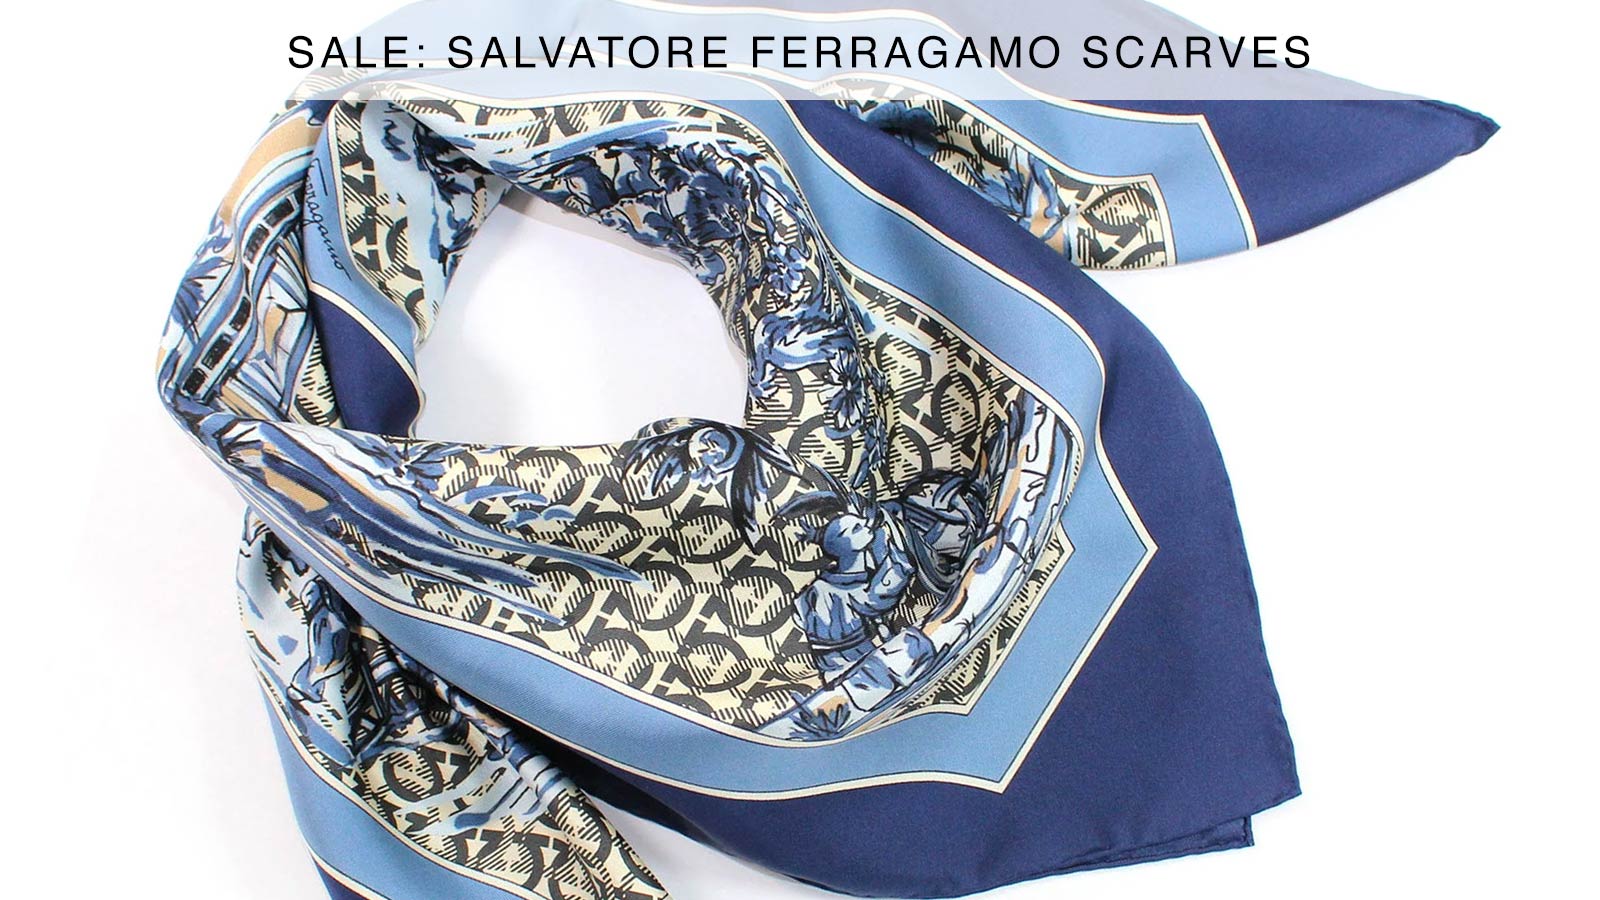 Designer Silk Scarves for Women